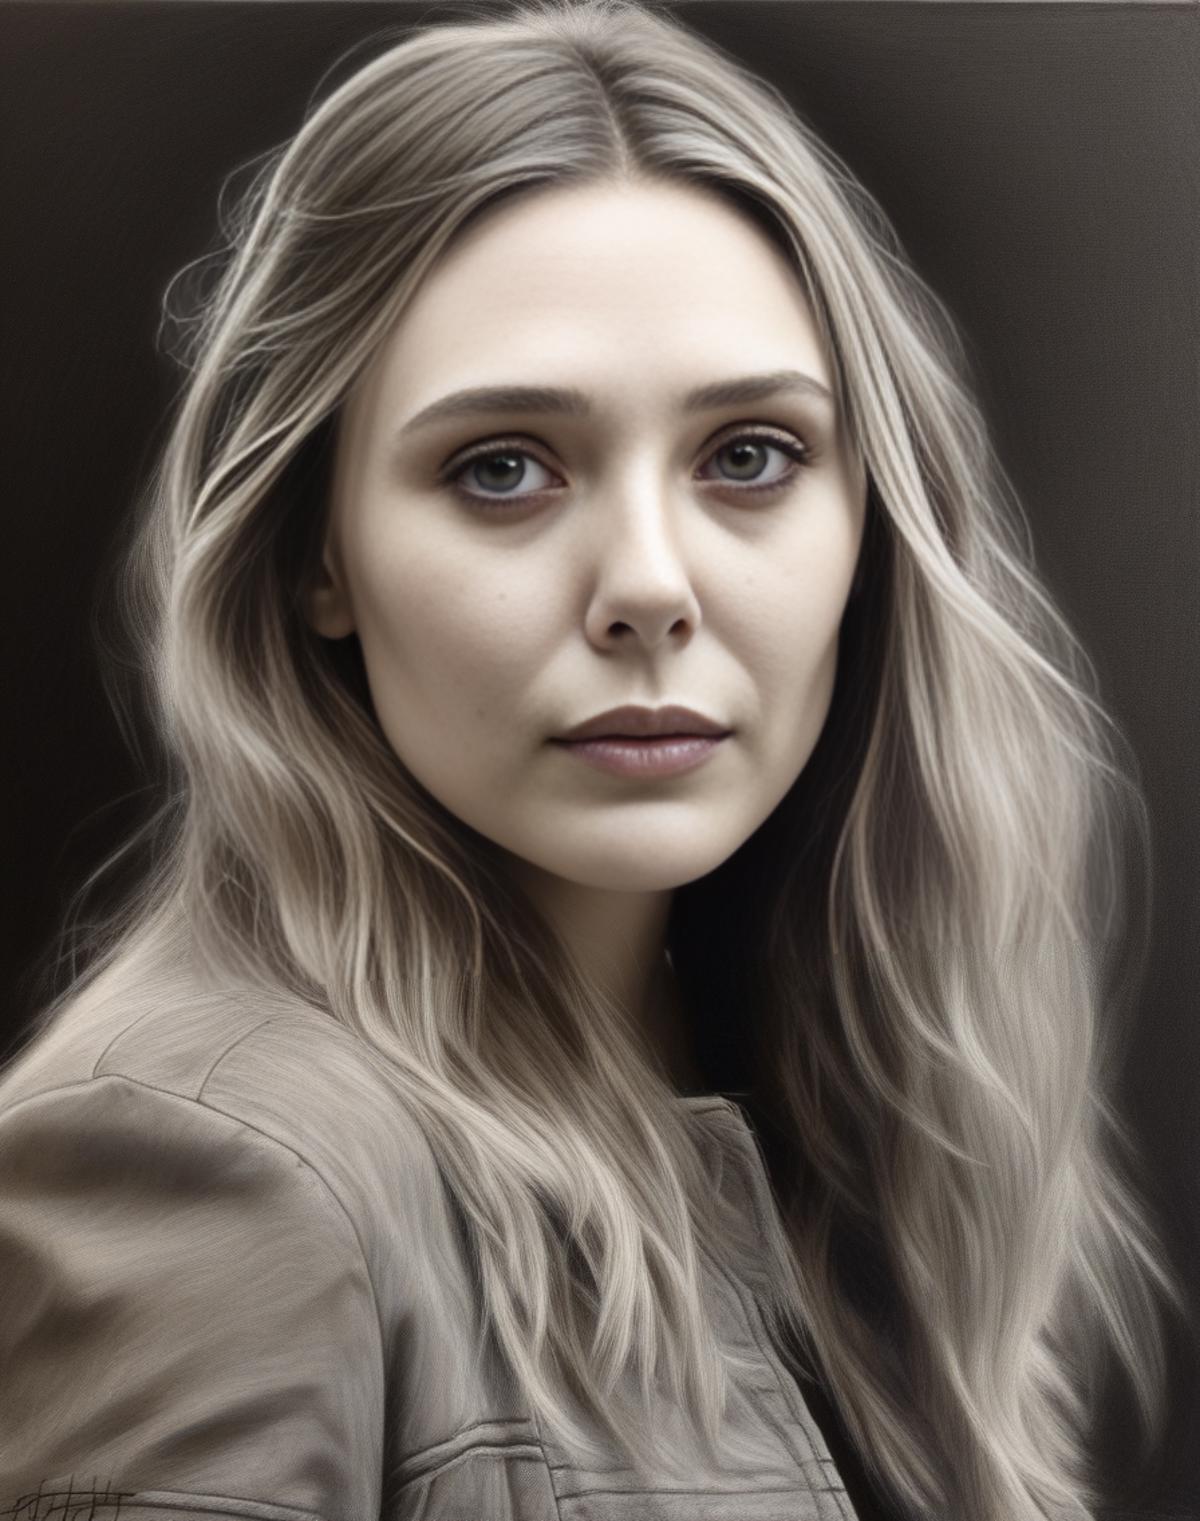 Elizabeth Olsen image by parar20